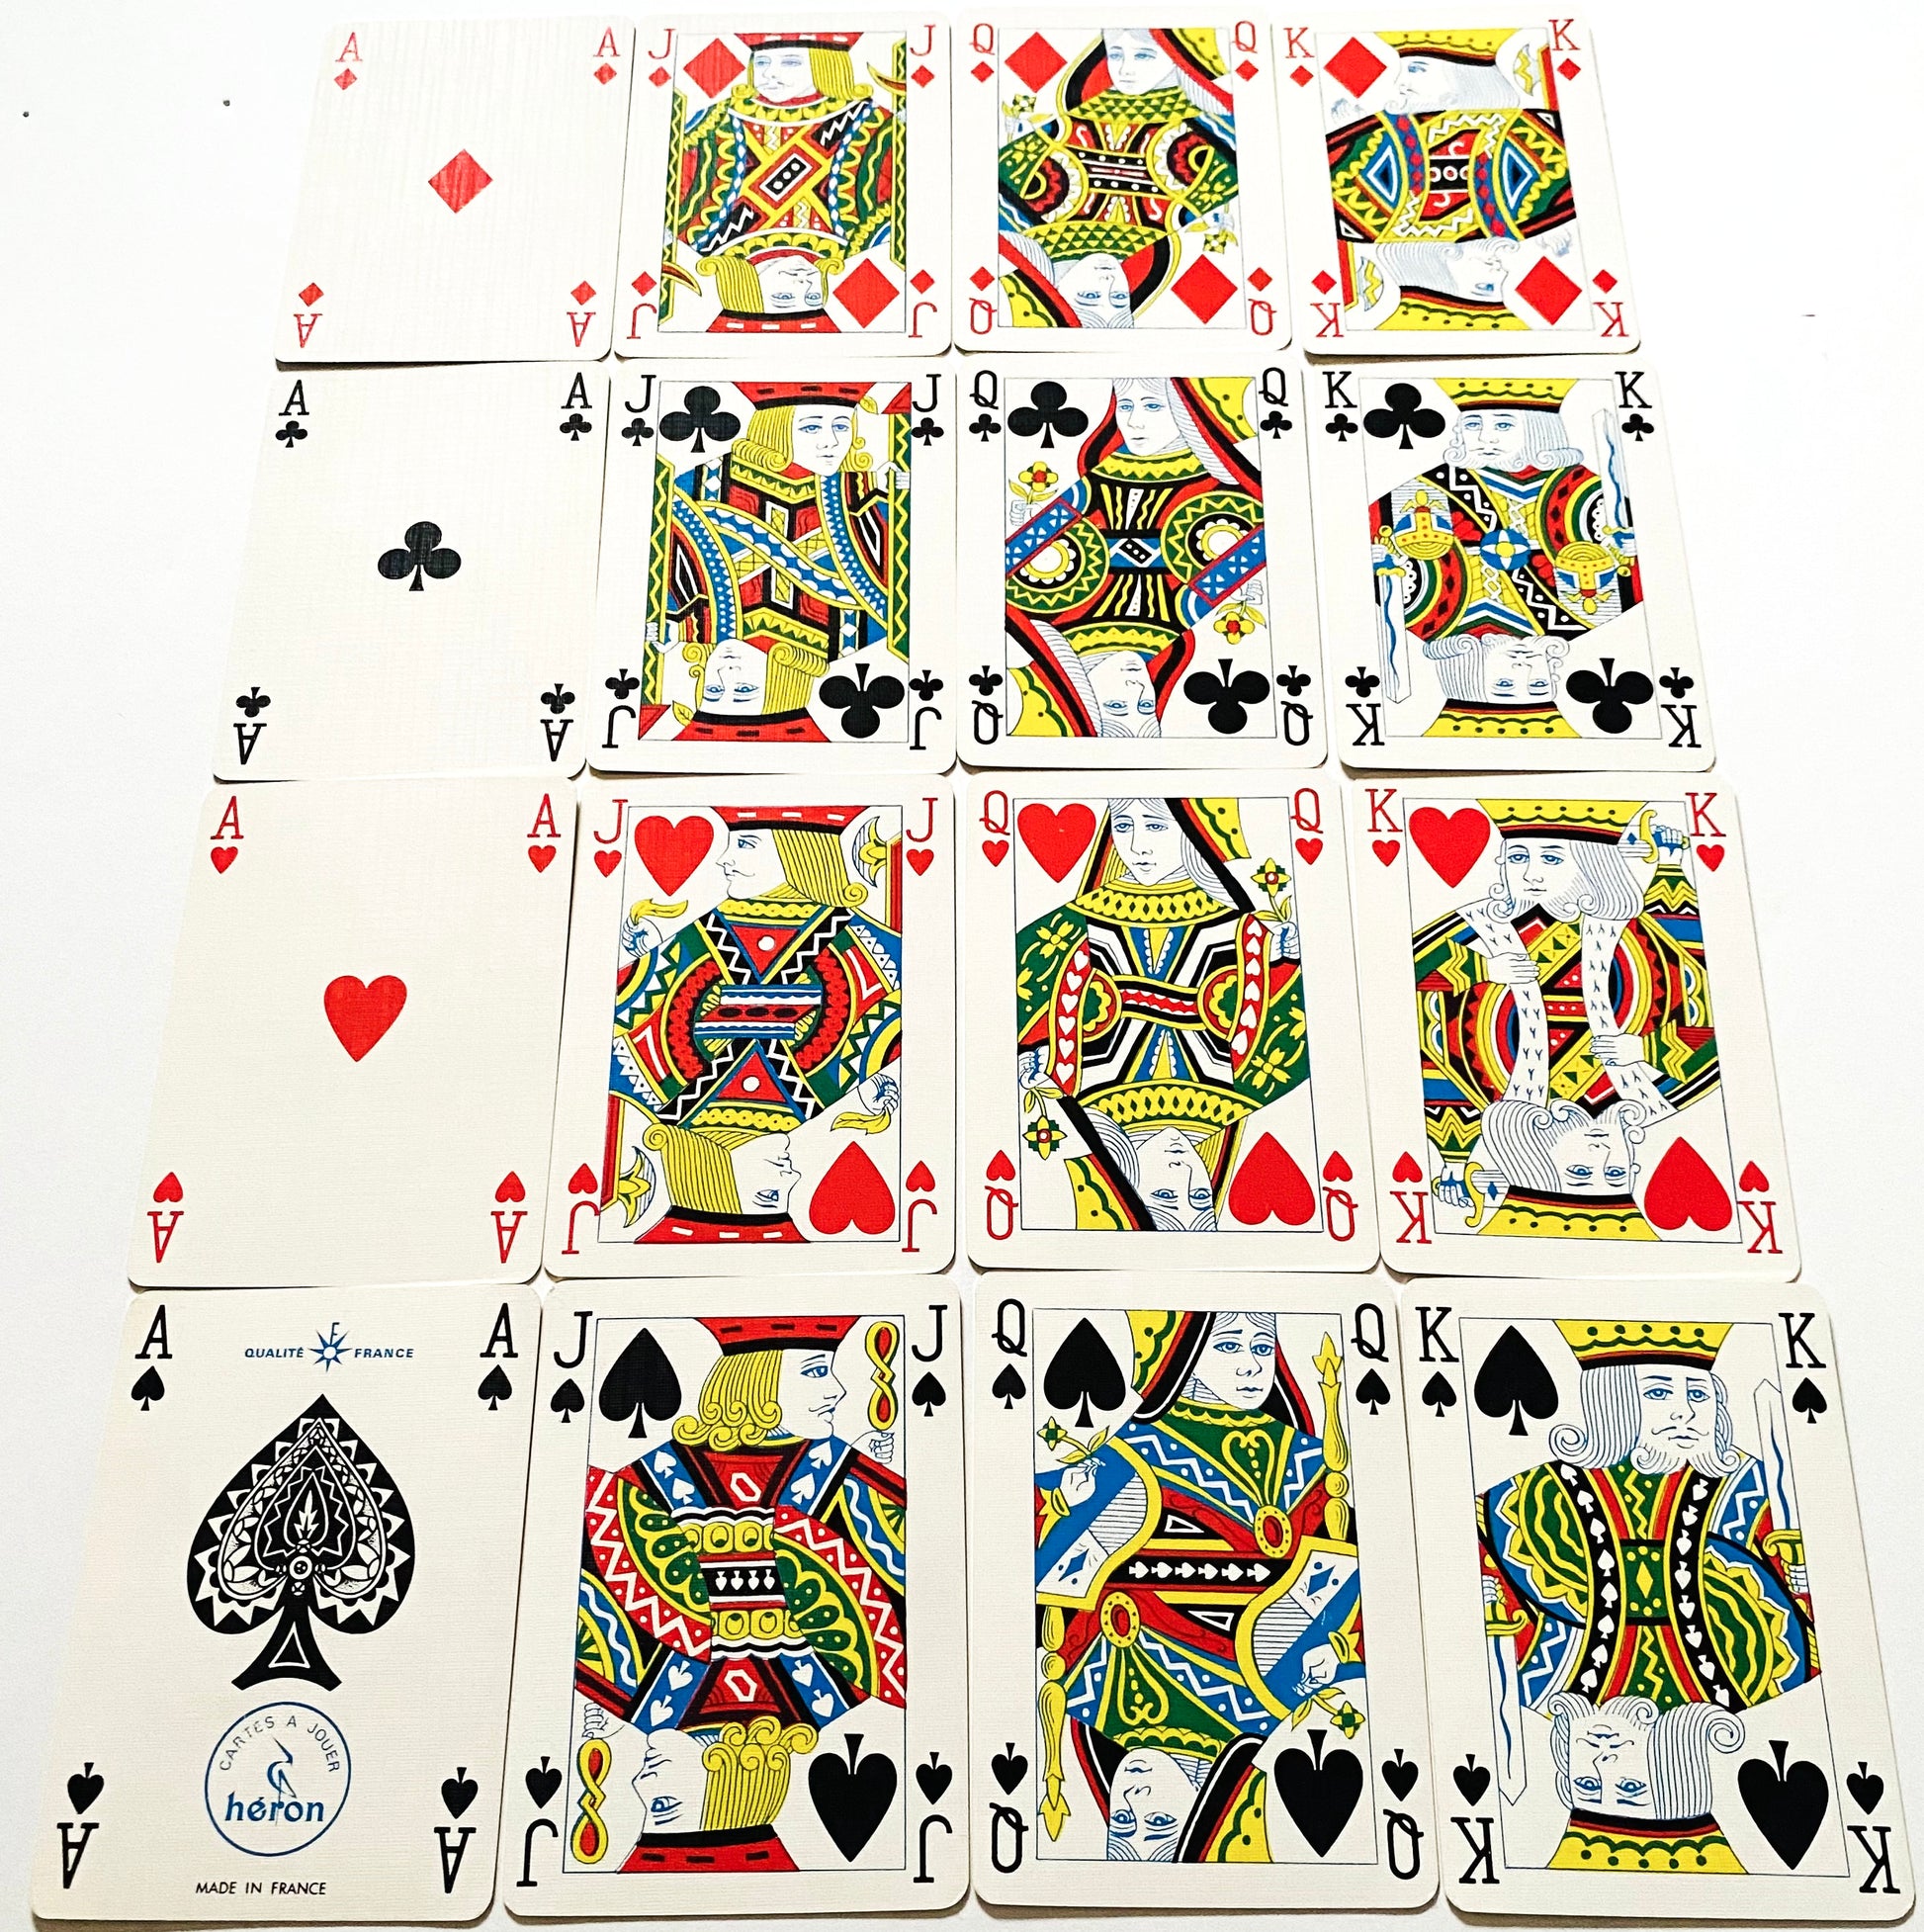 vuitton poker cards